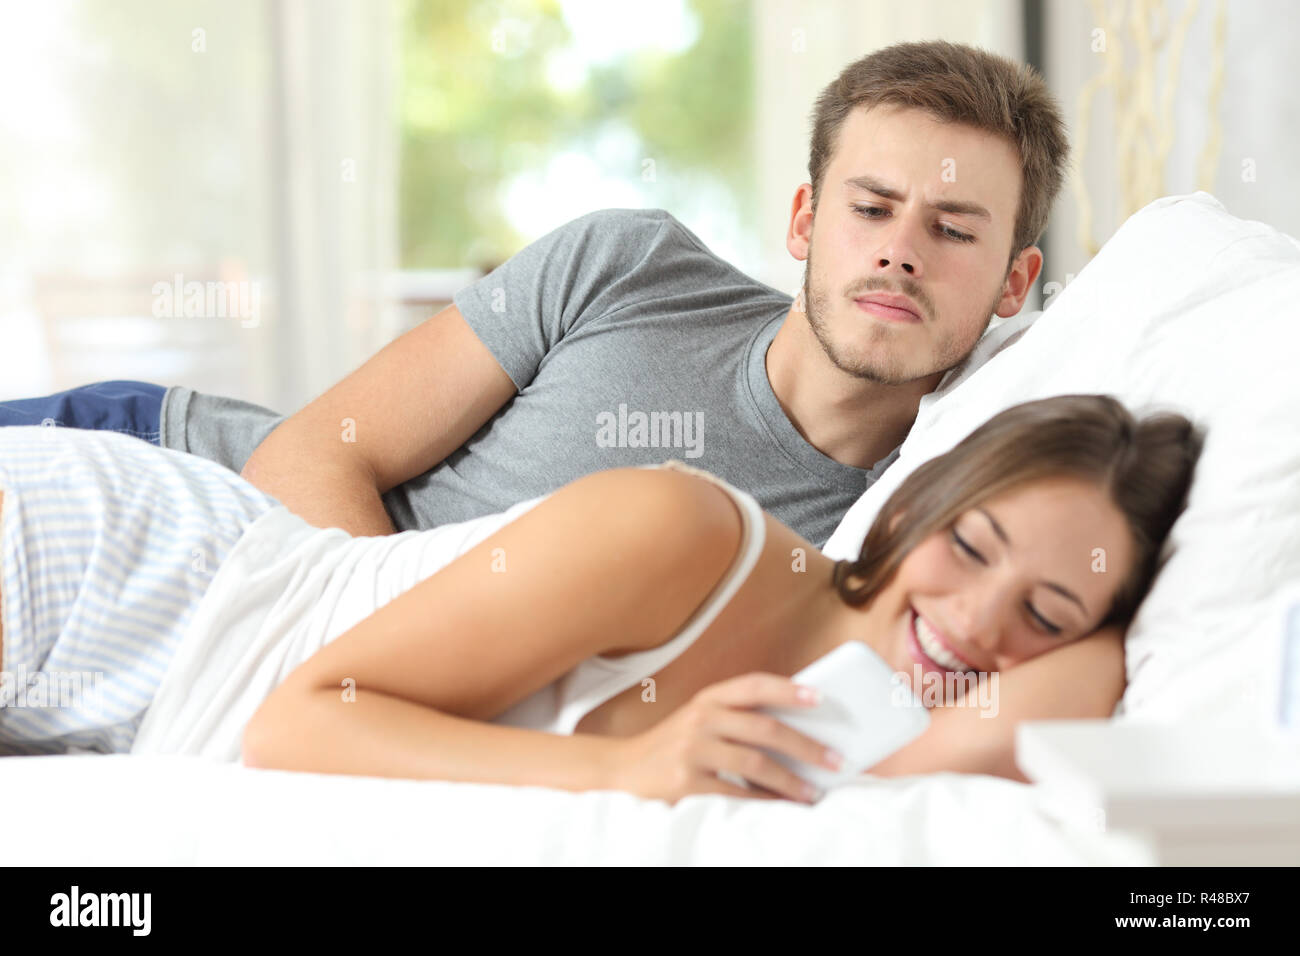 Eifersüchtig klatsch Mann seine Frau Handy beobachten Stockfoto